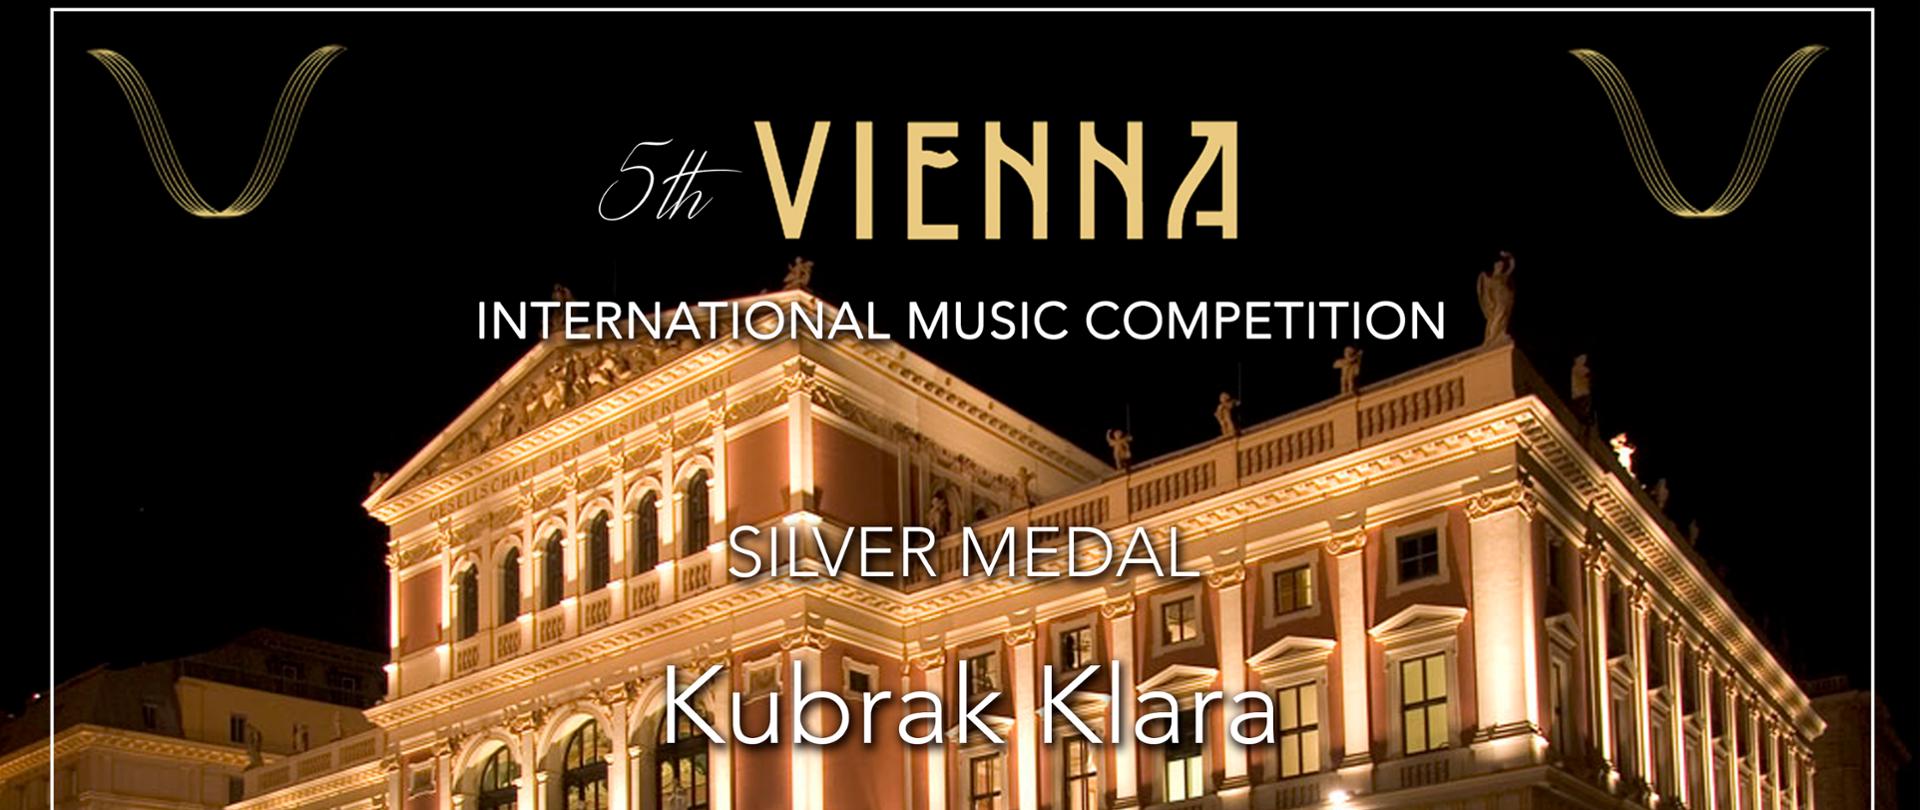 Dyplom Klary Kubrak za zdobycie srebrnego medalu podczas V Międzynarodowego Konkursu Muzycznego w Wiedniu.